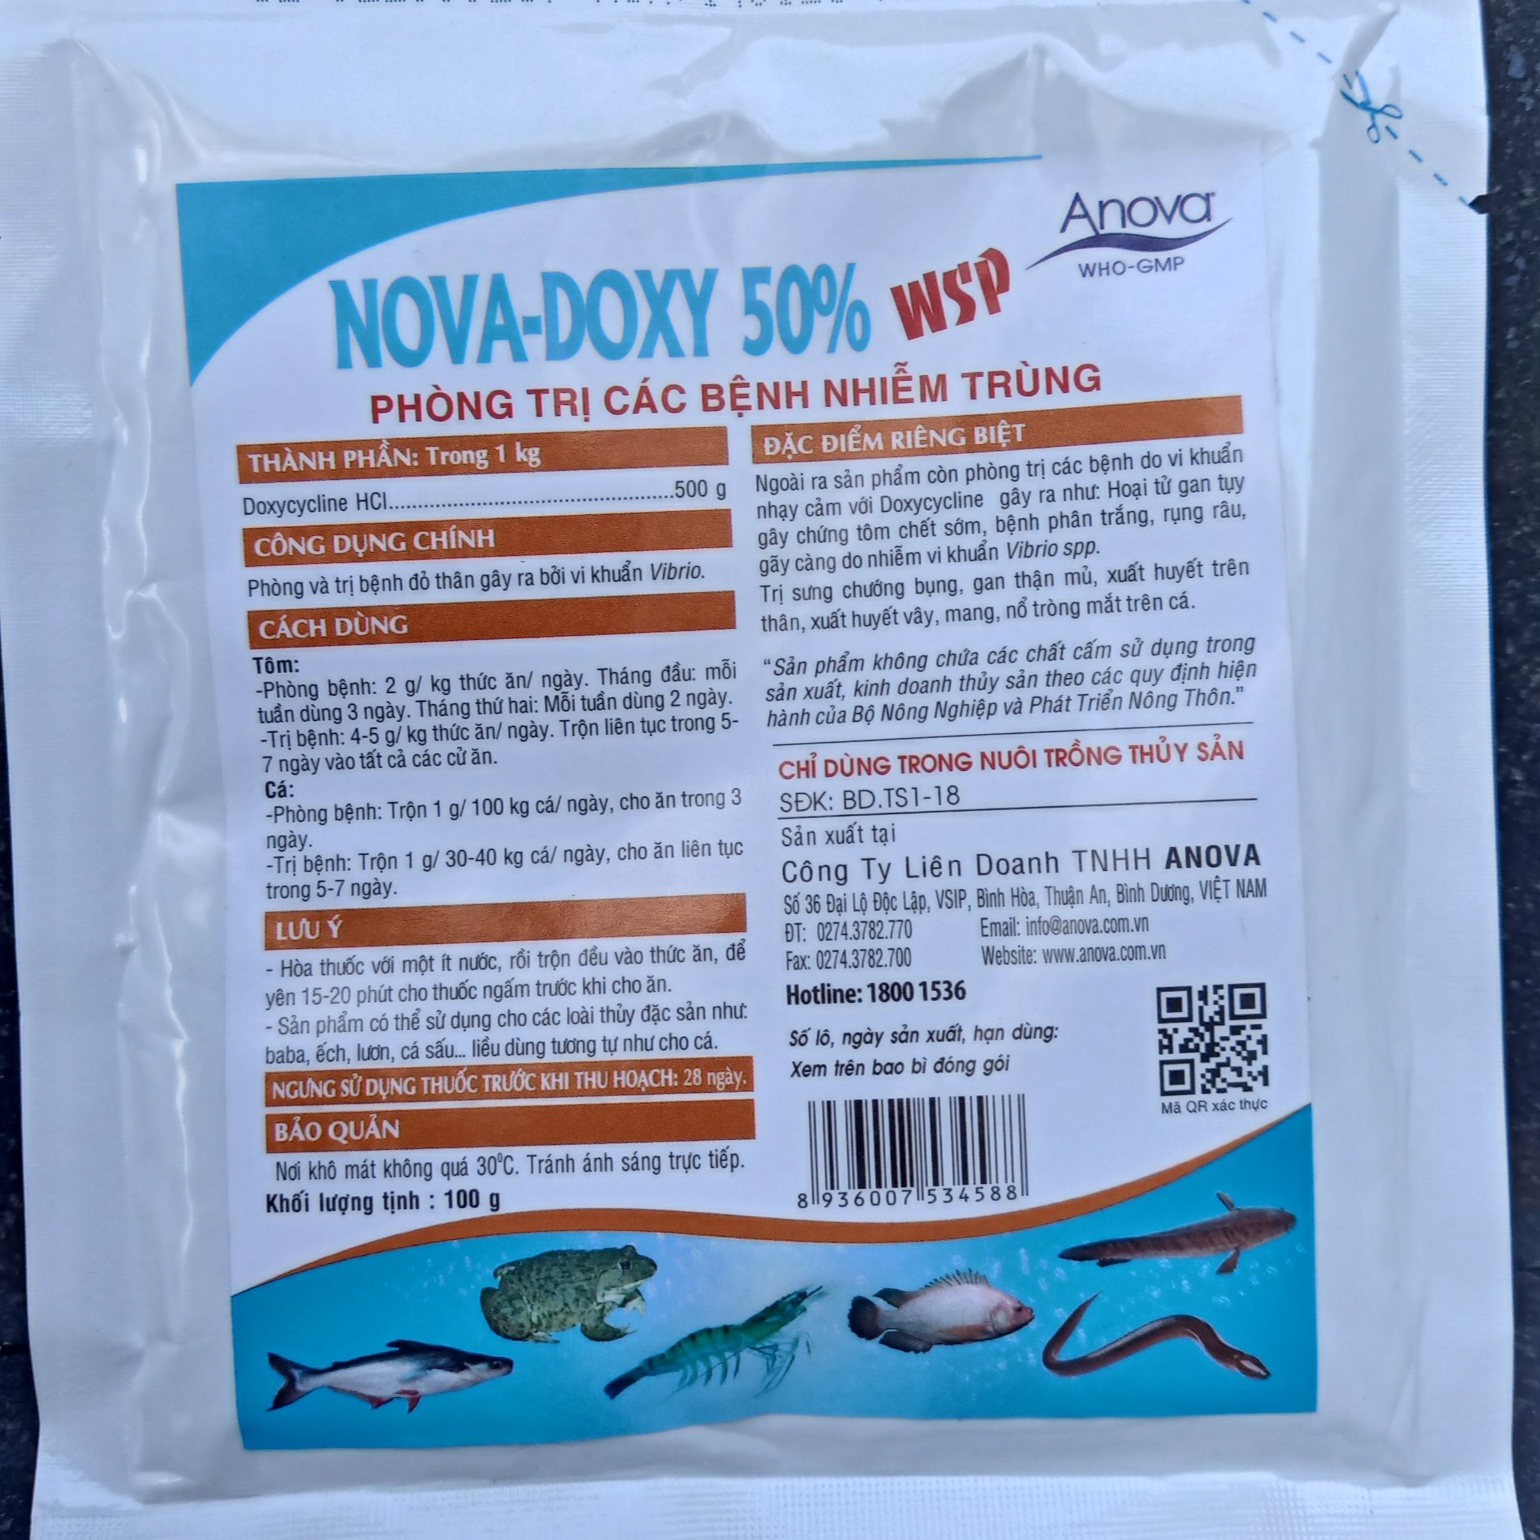 Nova Doxy 50% WSP trị xuất huyết vây, mang, chướng bụng, gan thận mủ, nổ tròng mắt trên cá, bệnh phân trắng trên tôm (Gói 100g)